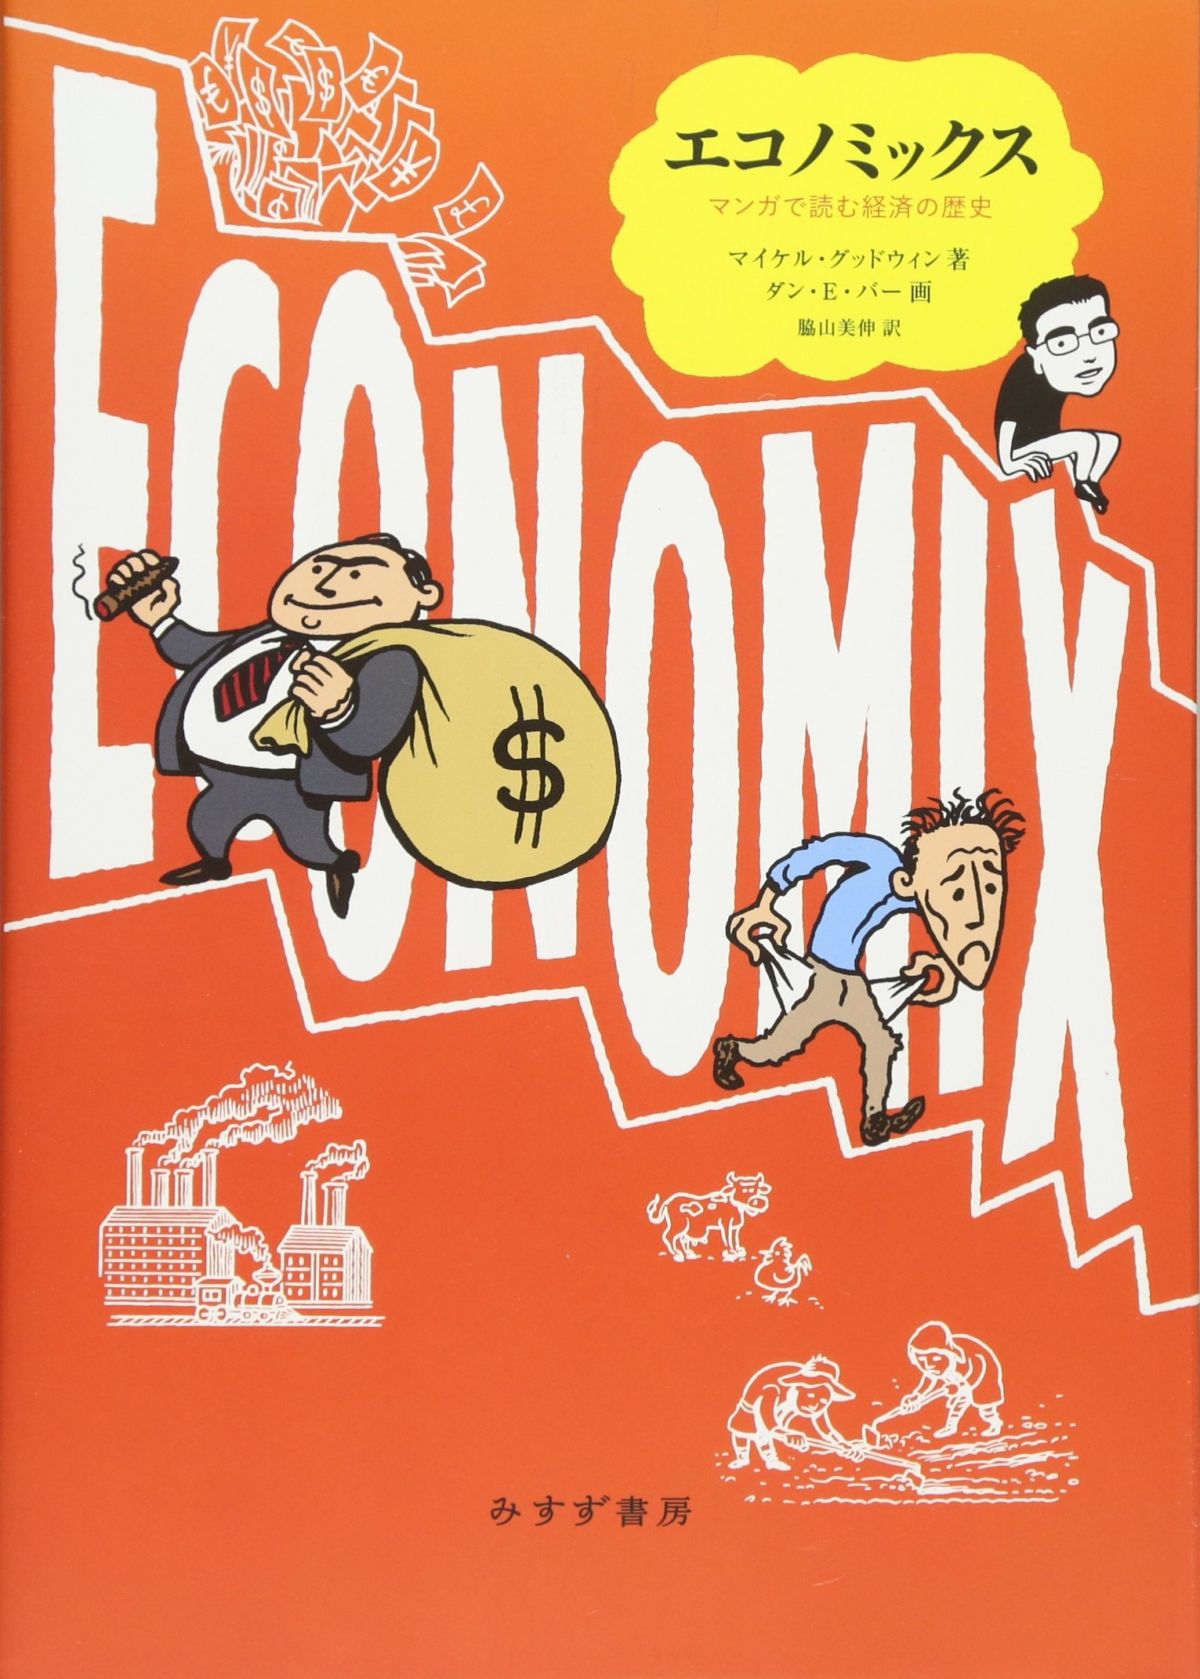 マンガでマスターする教養としての 経済 経済学と実体経済はなぜイメージが違う ダ ヴィンチニュース